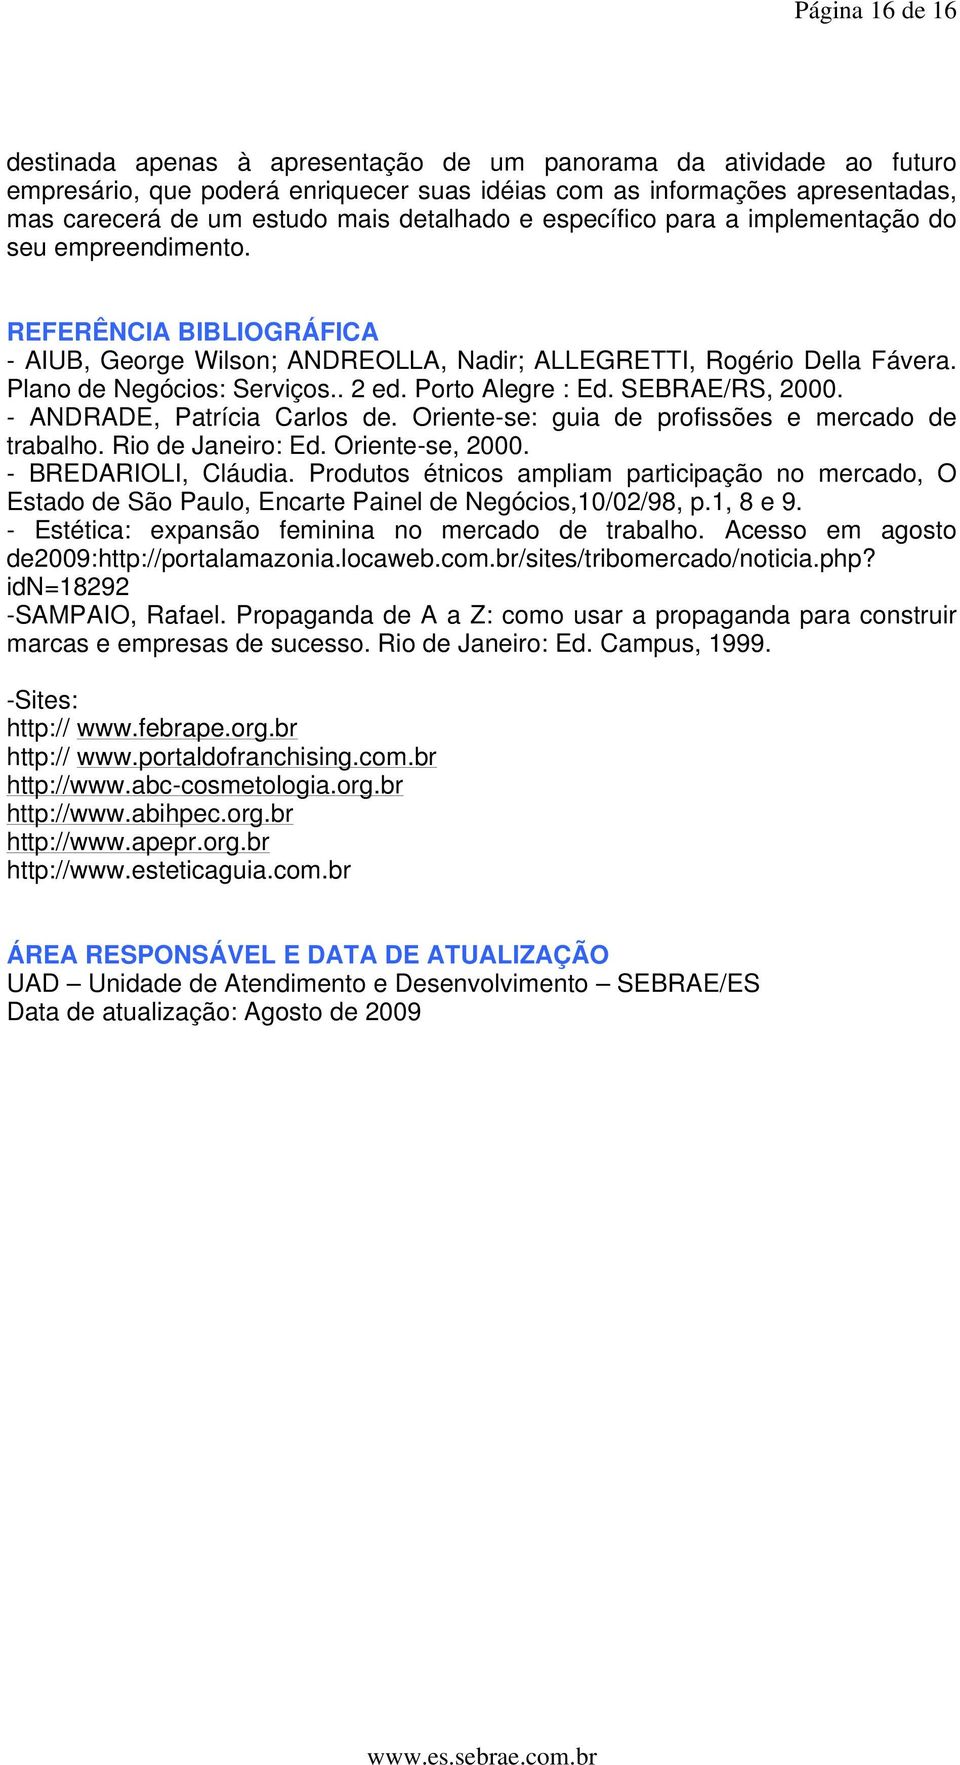 . 2 ed. Porto Alegre : Ed. SEBRAE/RS, 2000. - ANDRADE, Patrícia Carlos de. Oriente-se: guia de profissões e mercado de trabalho. Rio de Janeiro: Ed. Oriente-se, 2000. - BREDARIOLI, Cláudia.